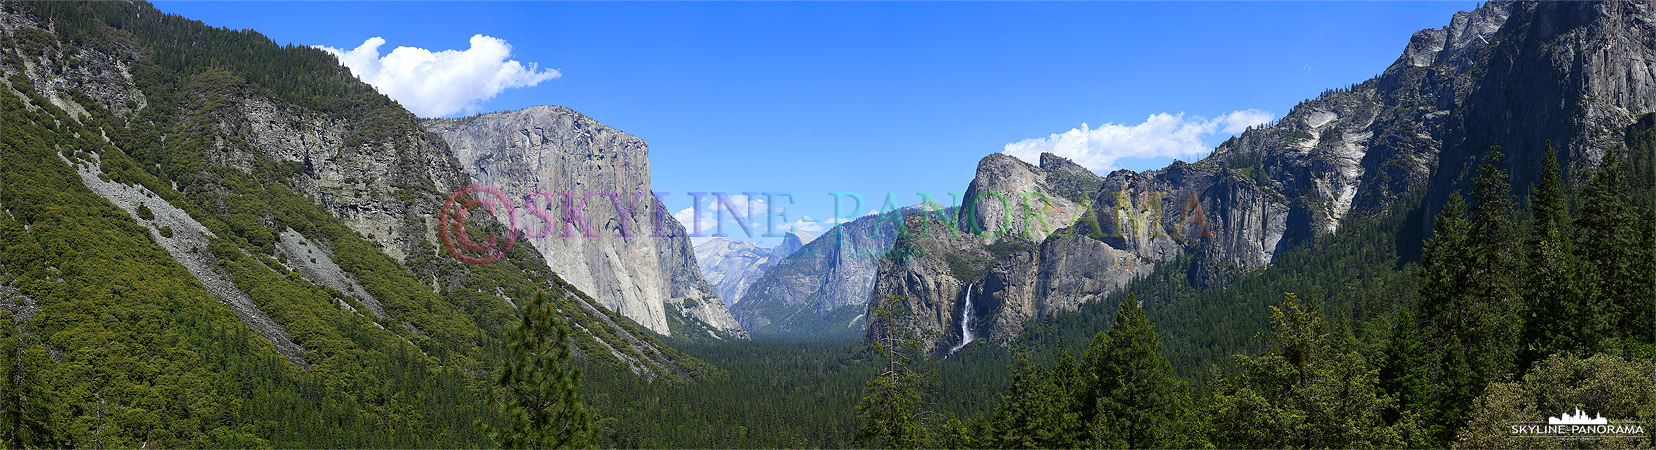 Yosemite Tunnel View (p_00556)